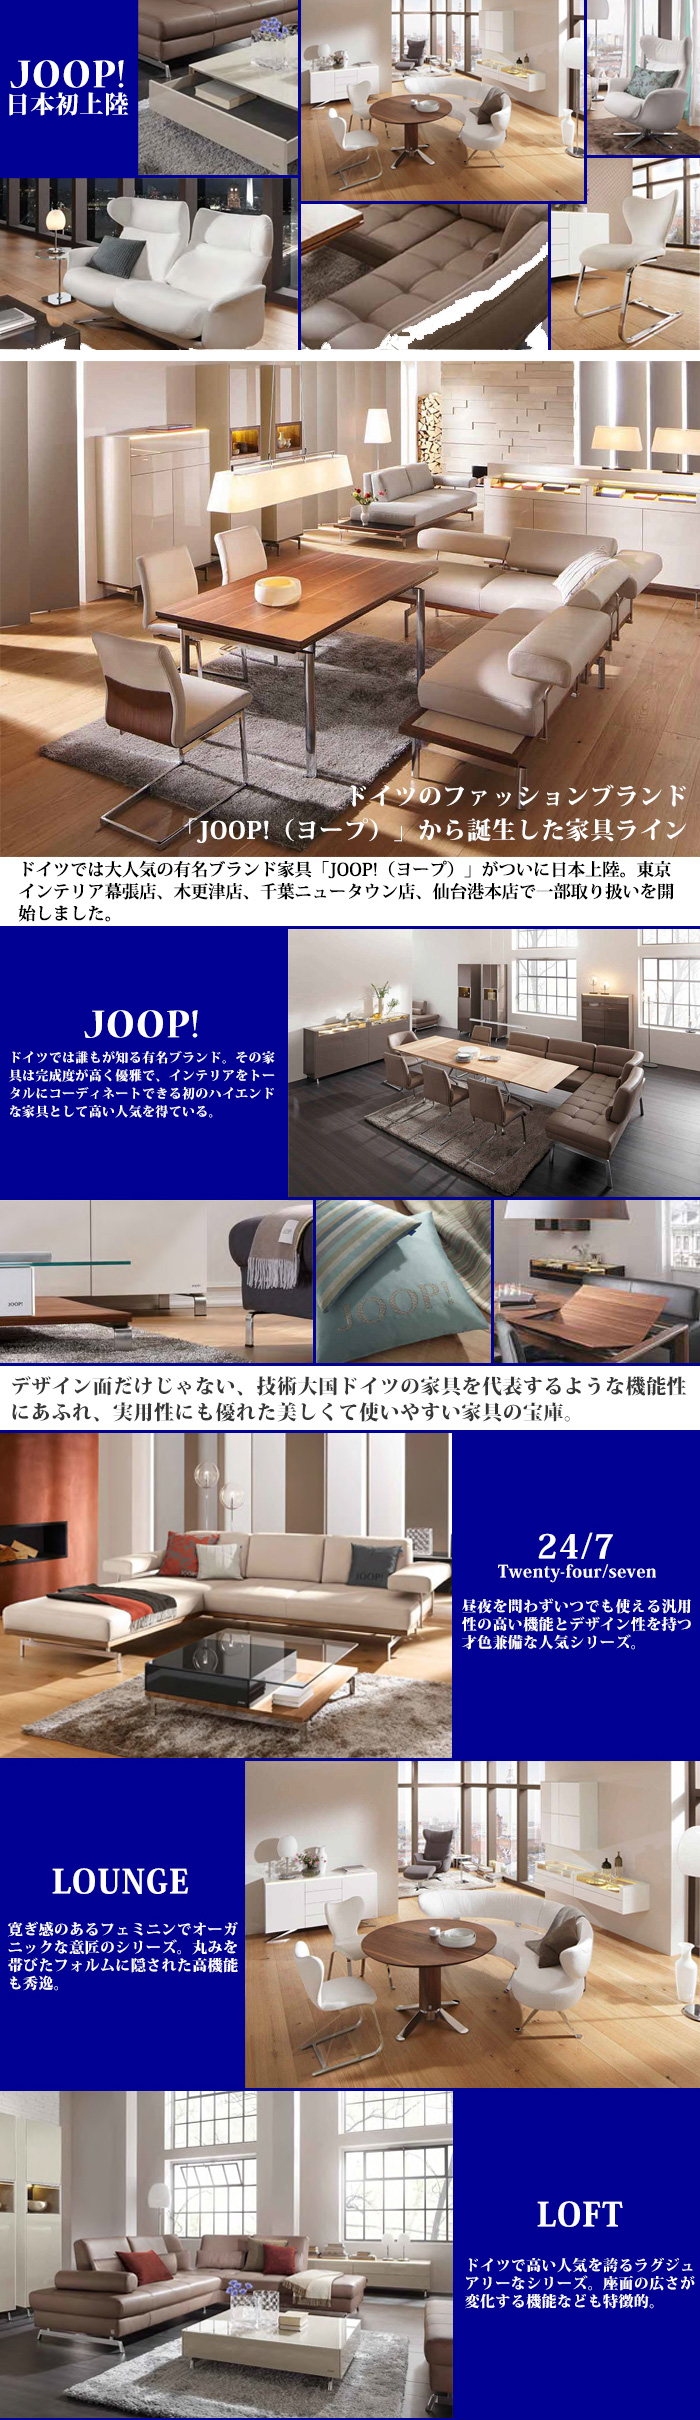 東京インテリア JOOP 高級 お洒落 本革 モデルルーム